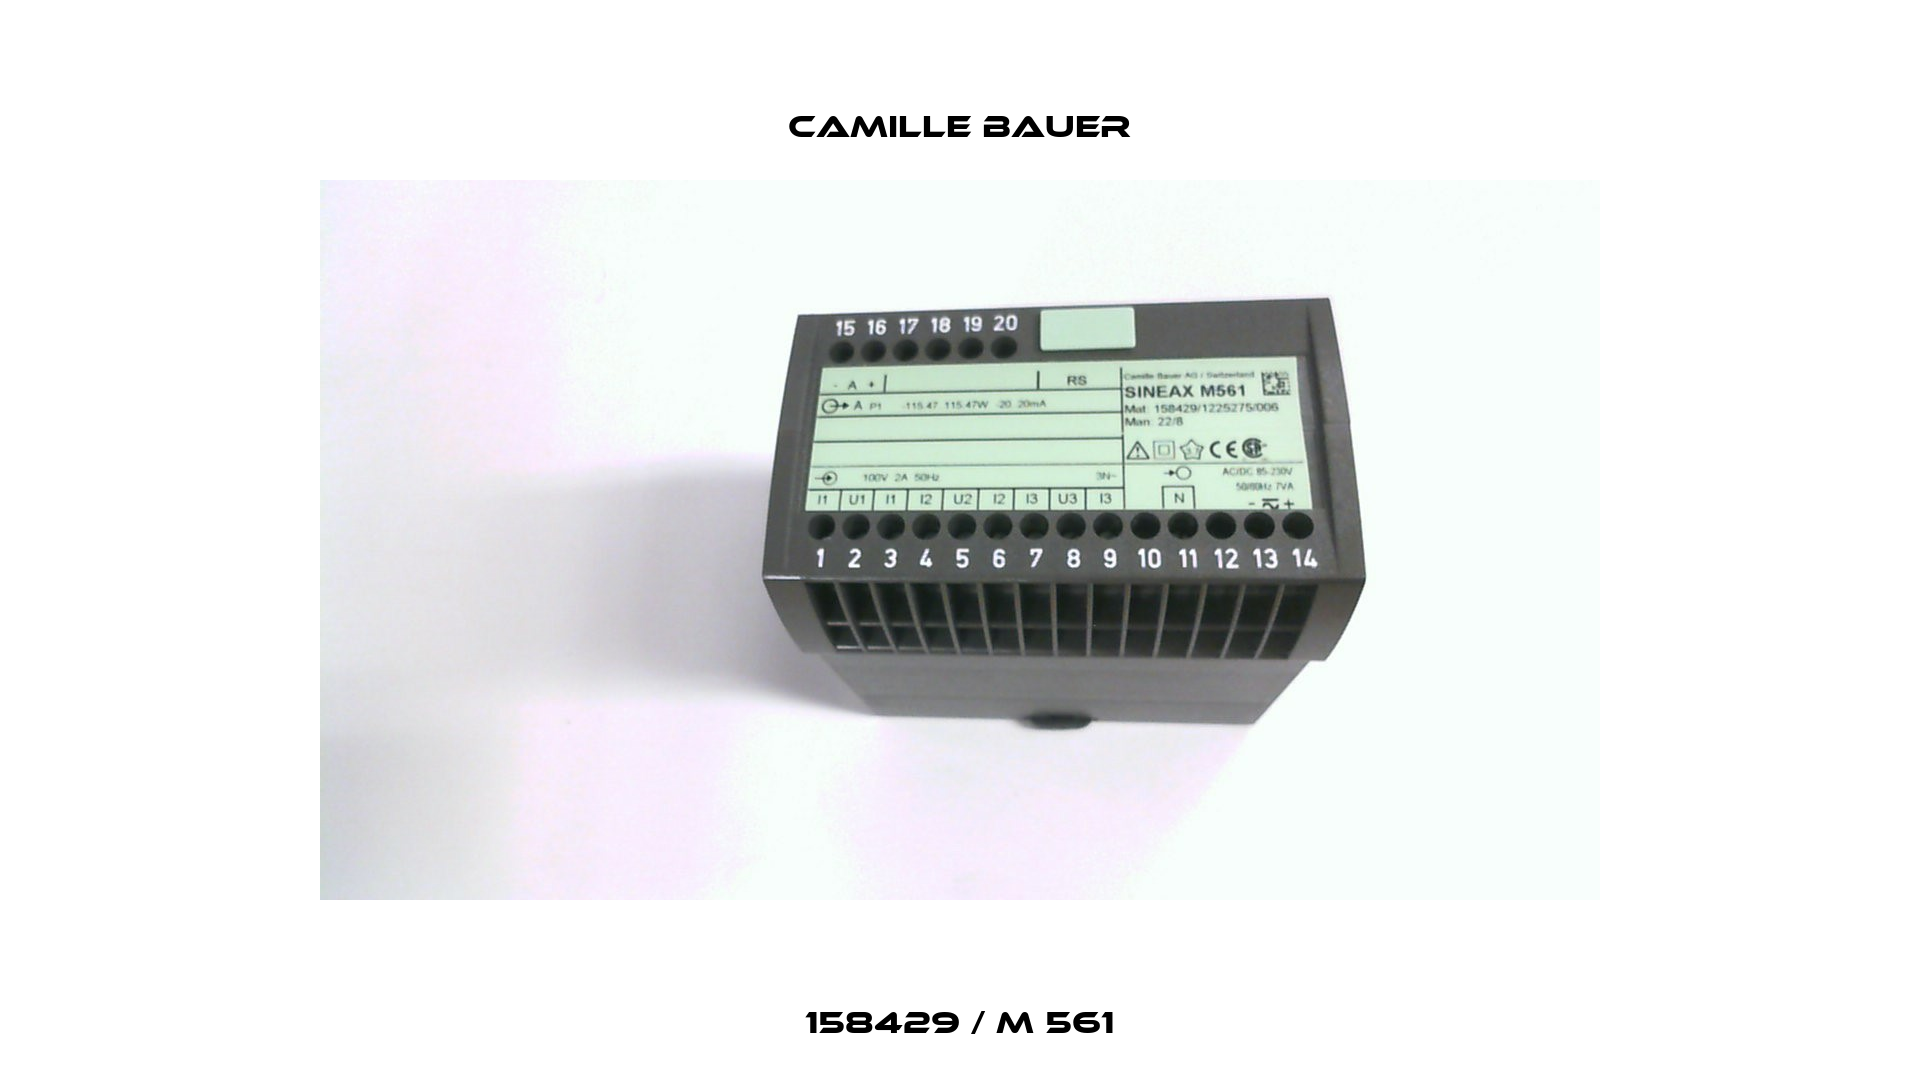 158429 / M 561 Camille Bauer